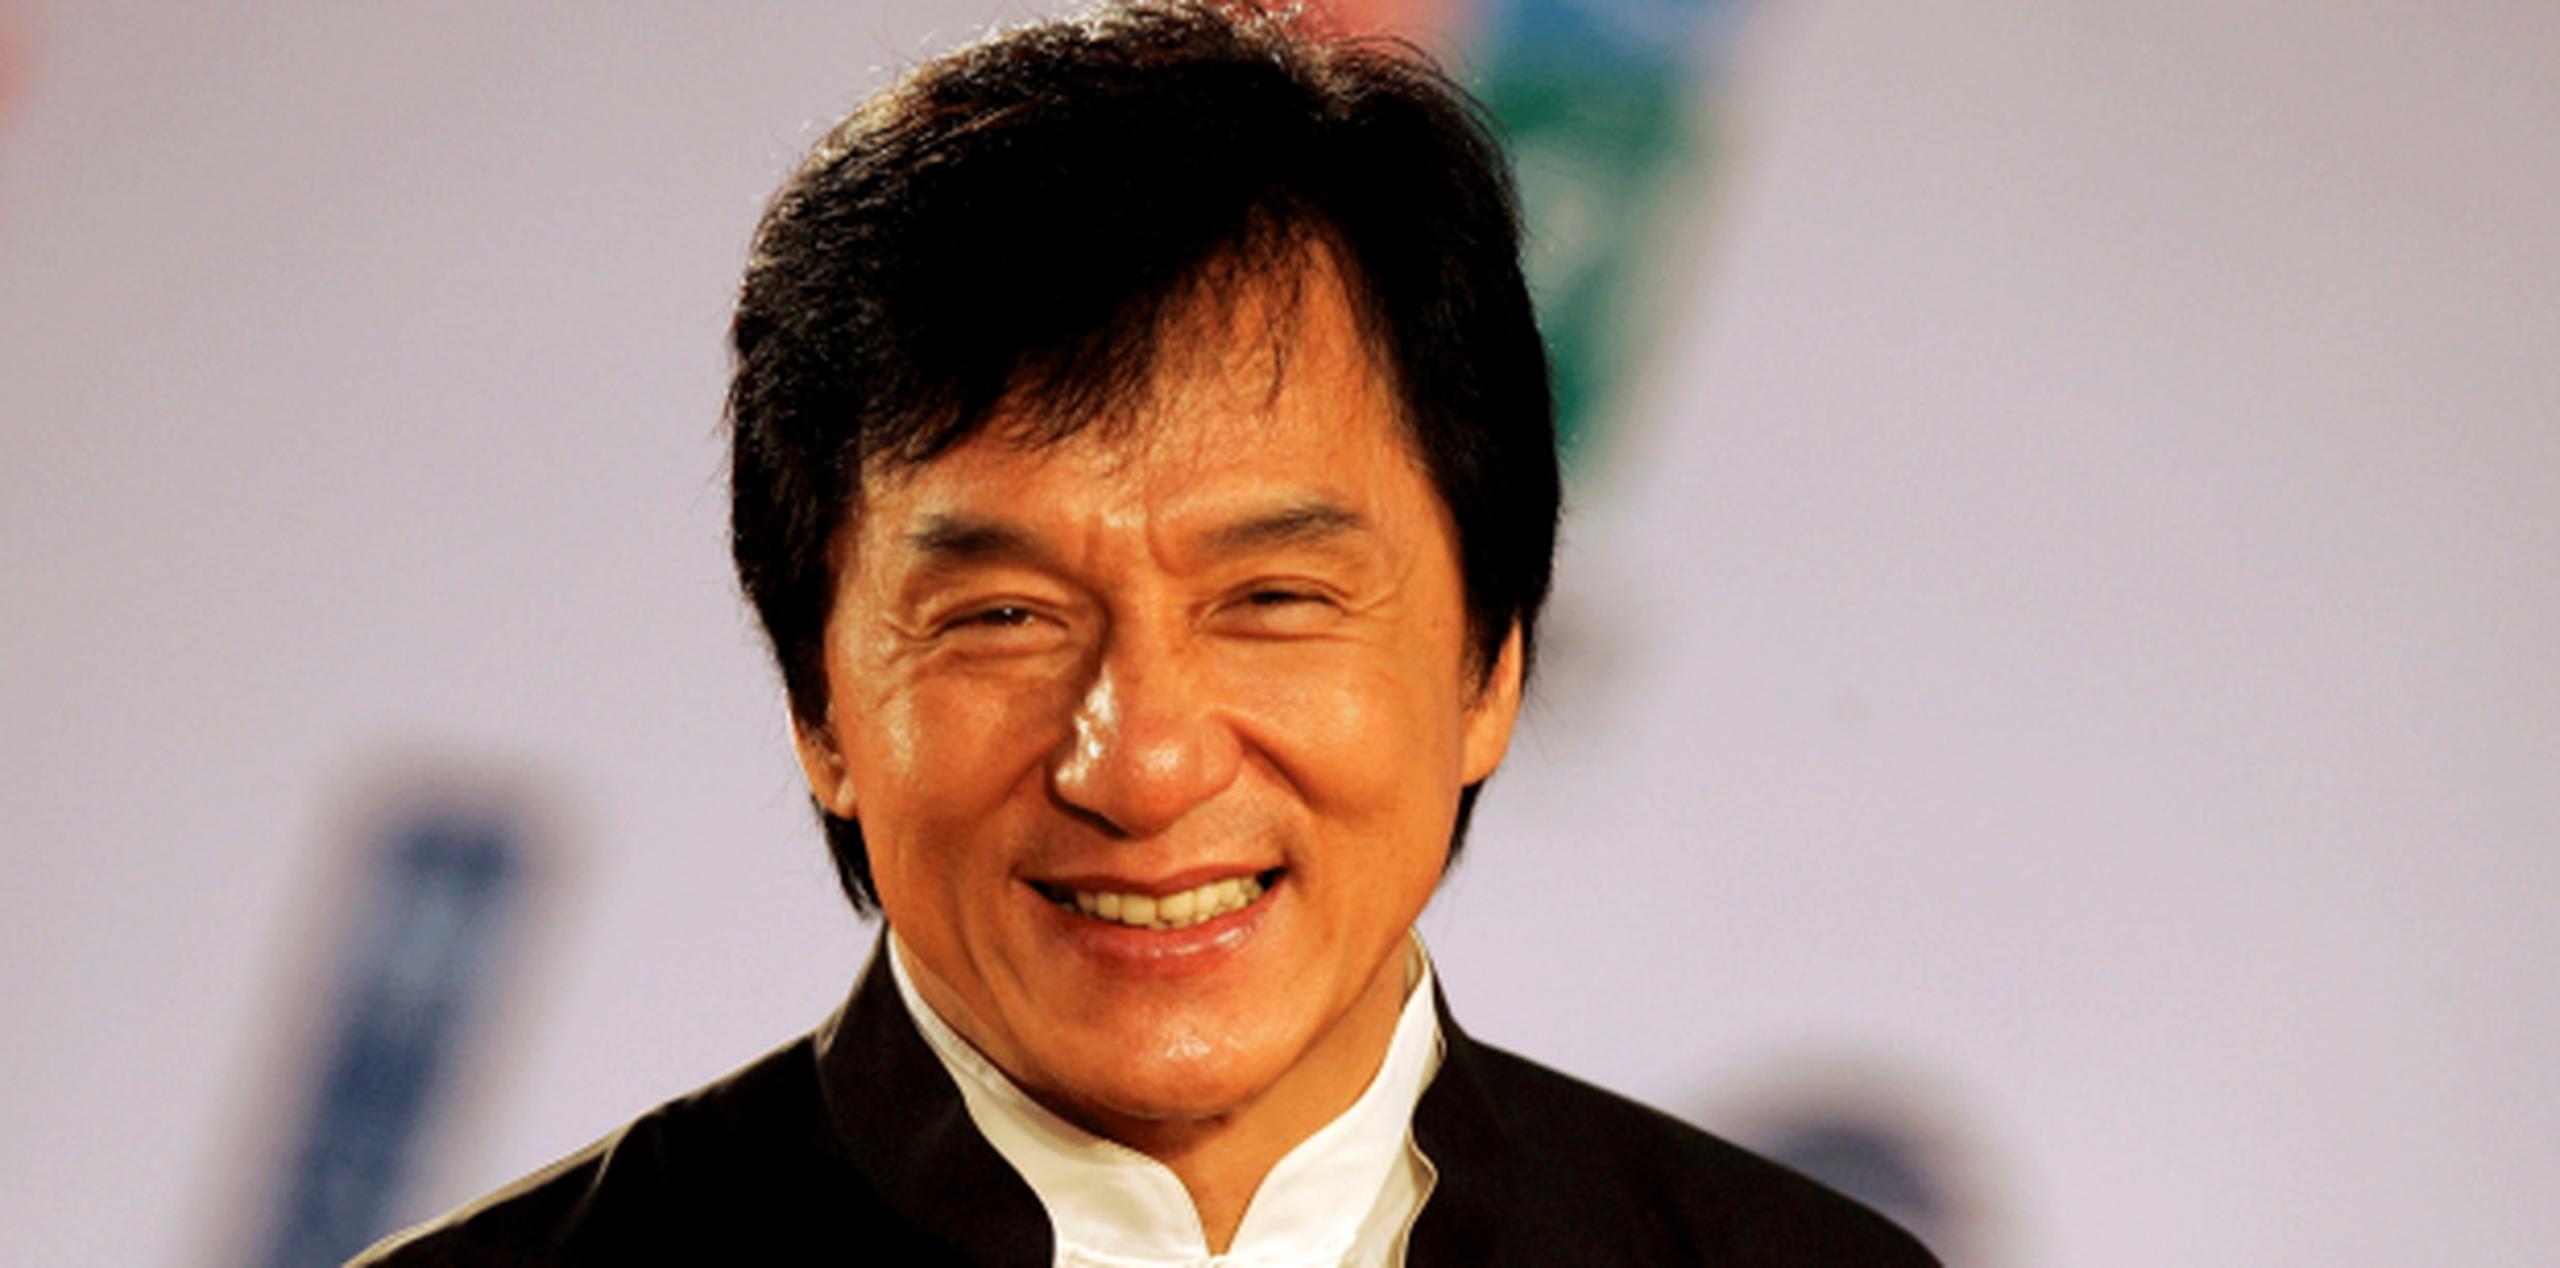 Como parte de la campaña, varias celebridades han sido detenidas, entre ellas, el hijo de Jackie Chan, Jaycee Chan. (Archivo)